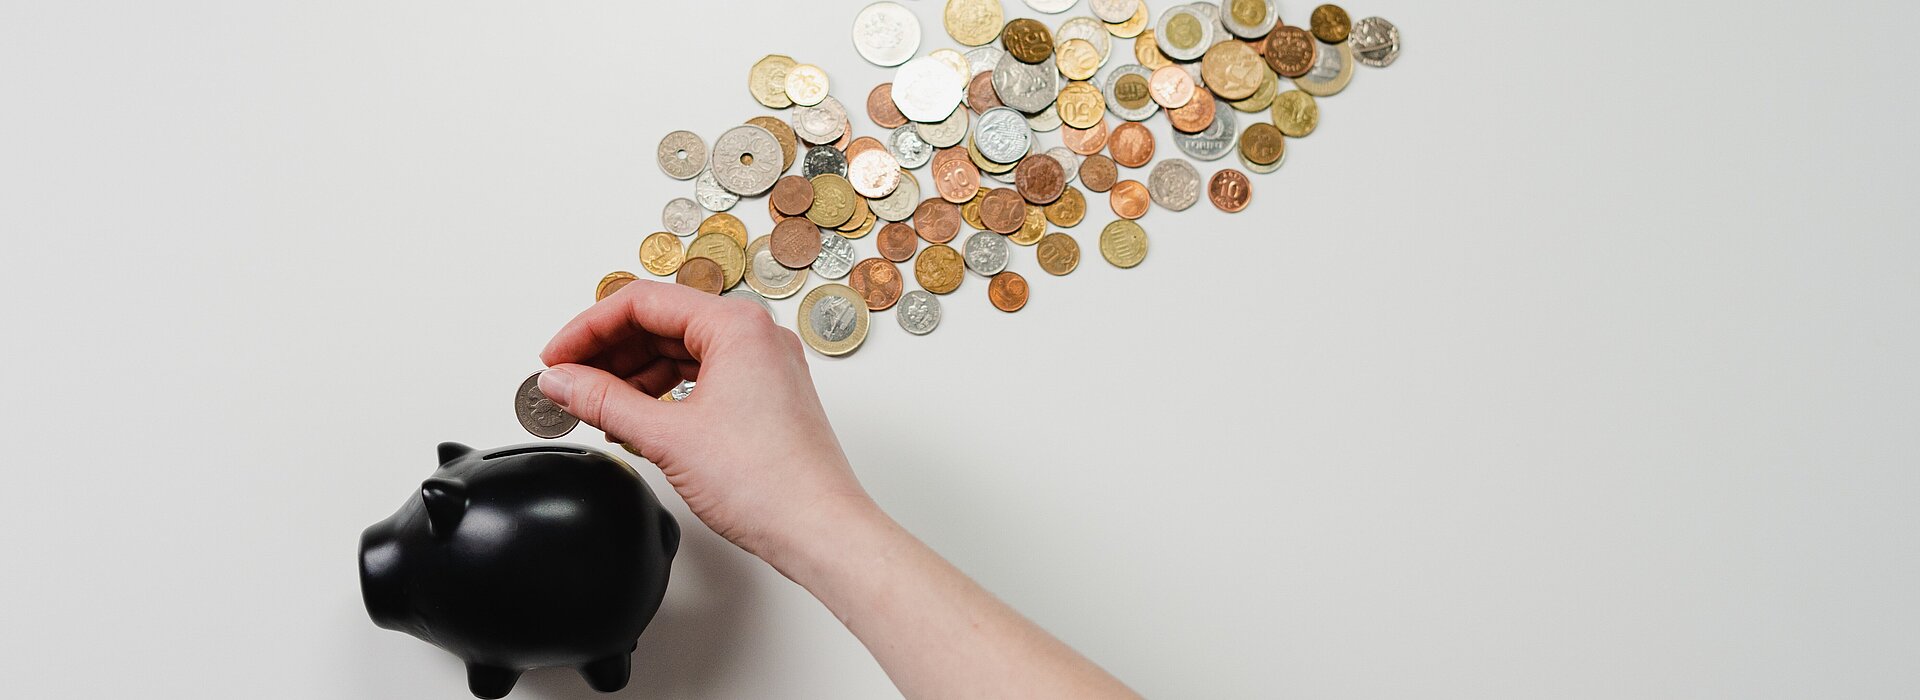 A imagem apresenta um cofre em formato de porco com moedas ao seu redor. 